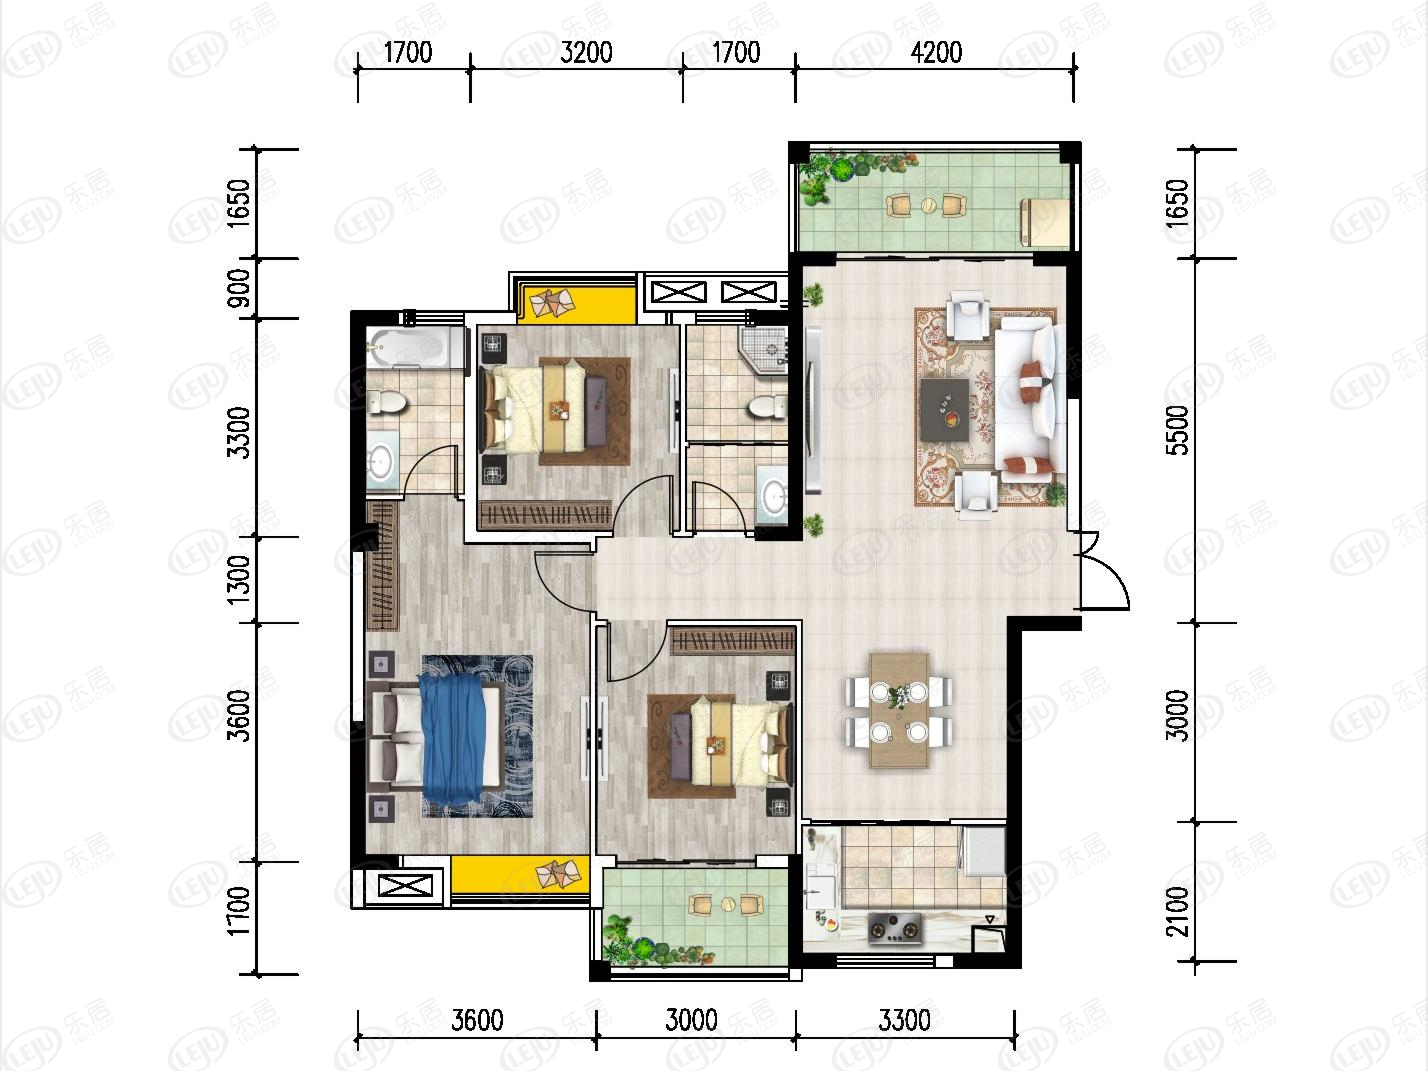 中添领域三居室户型介绍 户型面积96.98~147.63㎡